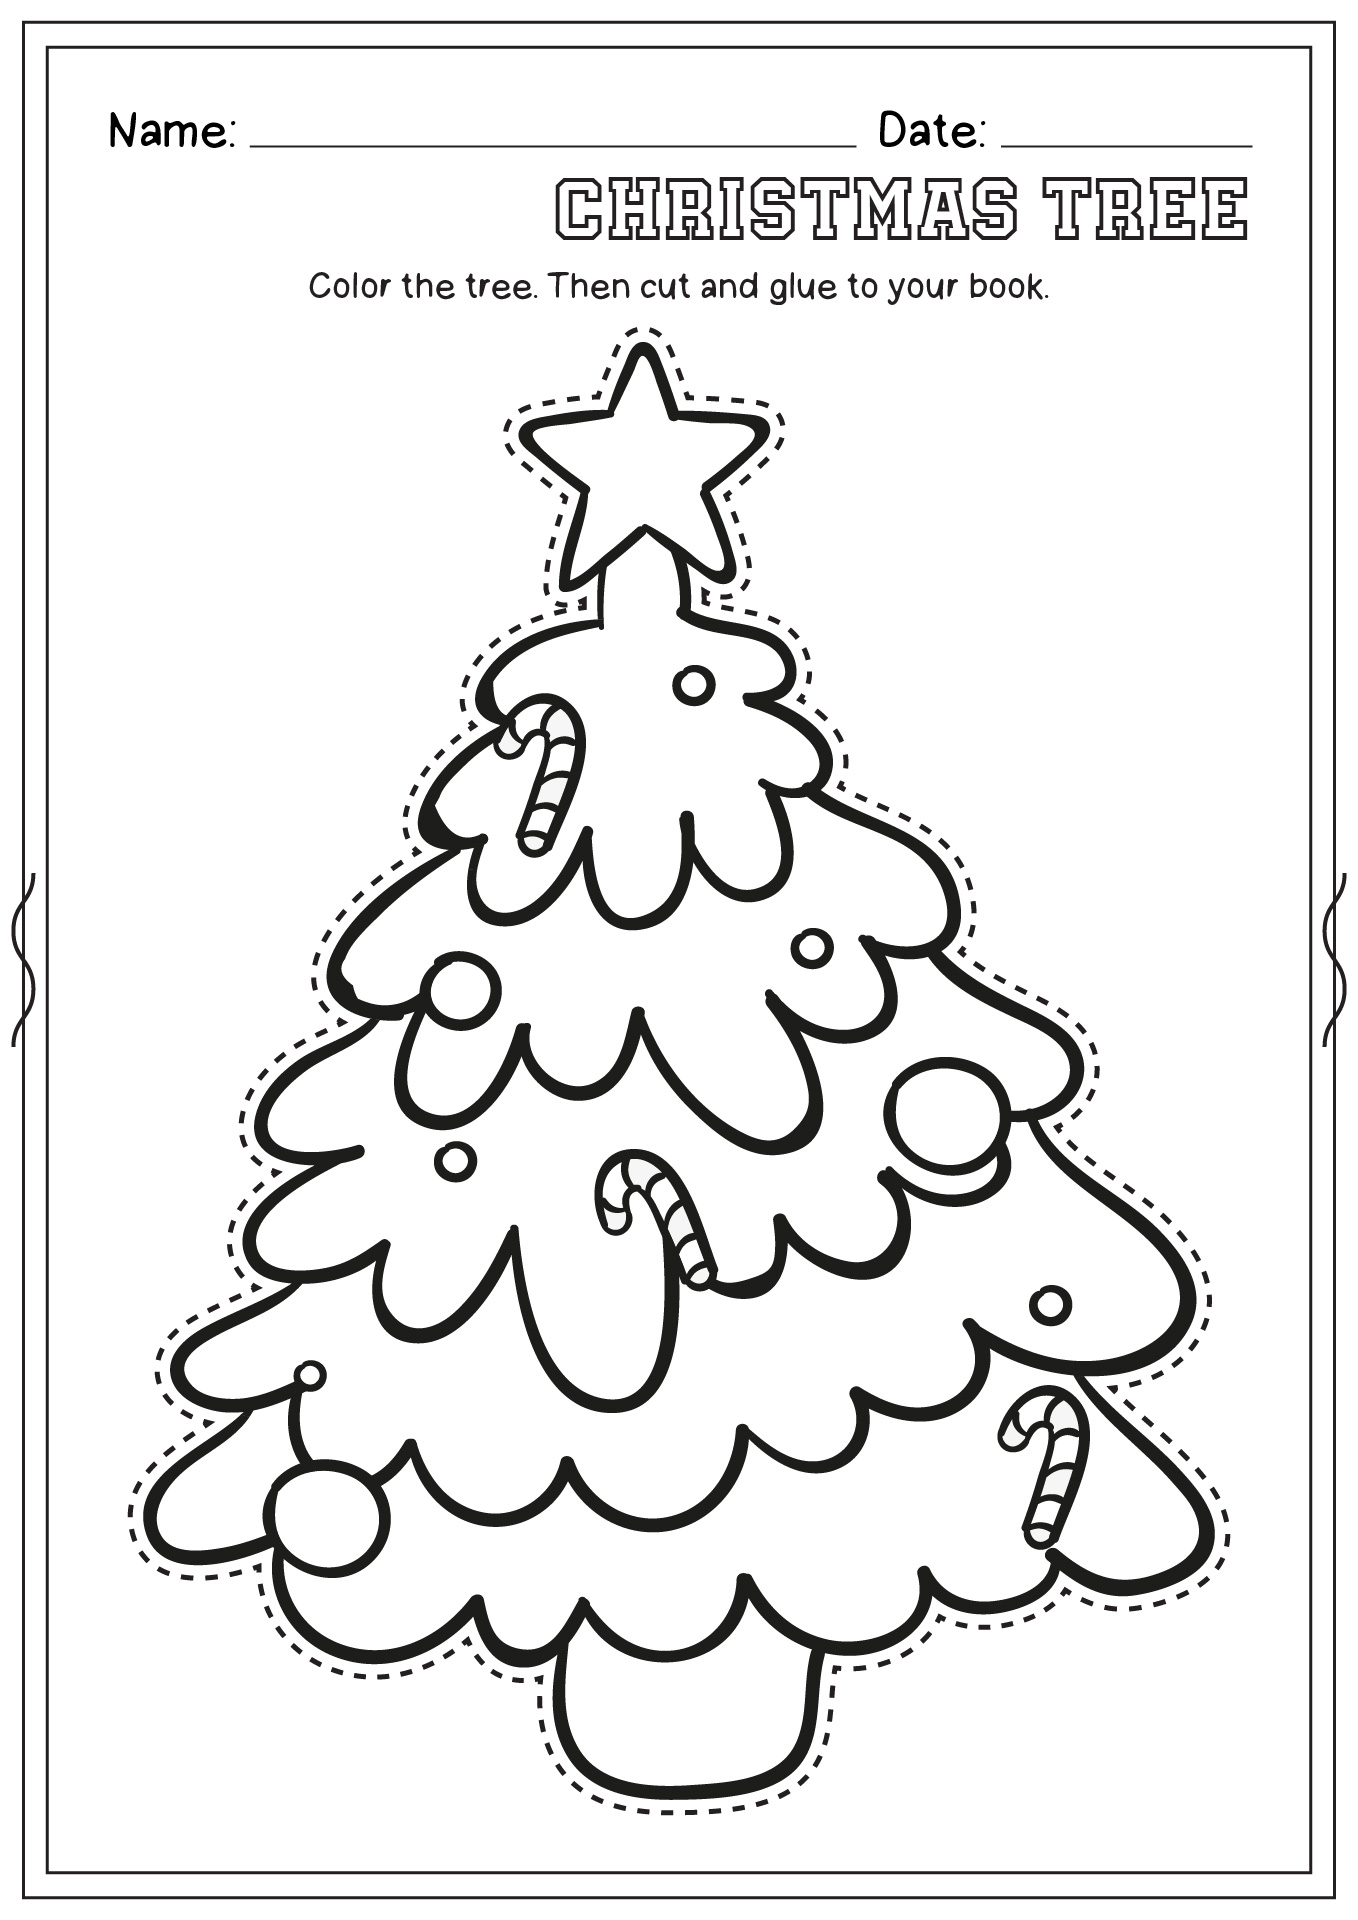 Christmas Tree Pre-K Worksheet